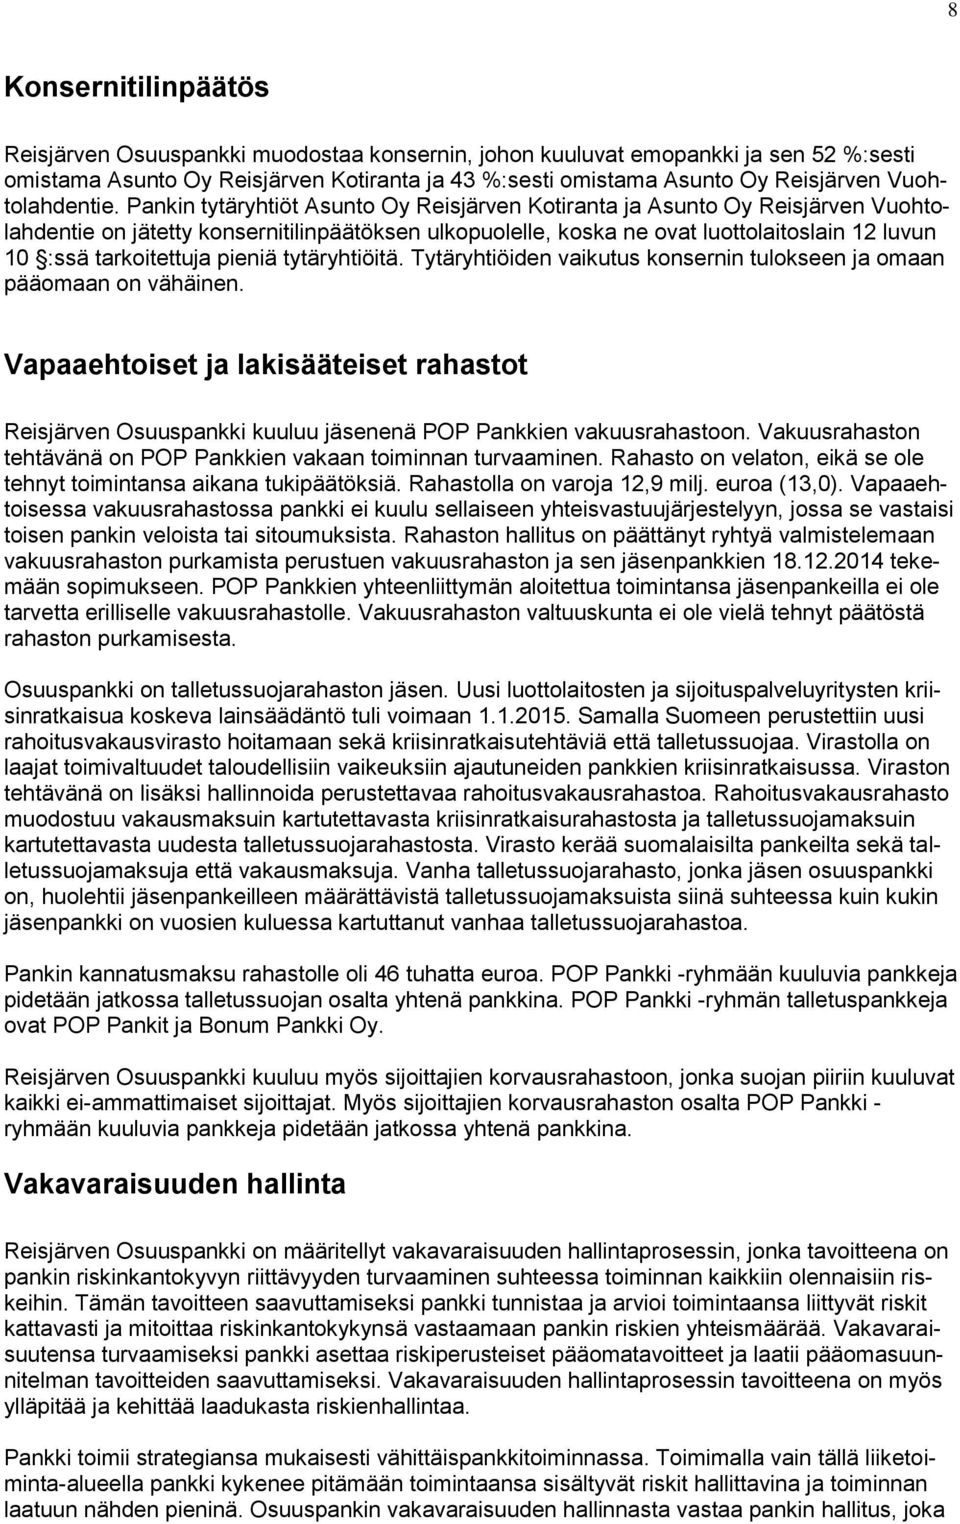 Pankin tytäryhtiöt Asunto Oy Reisjärven Kotiranta ja Asunto Oy Reisjärven Vuohtolahdentie on jätetty konsernitilinpäätöksen ulkopuolelle, koska ne ovat luottolaitoslain 12 luvun 10 :ssä tarkoitettuja